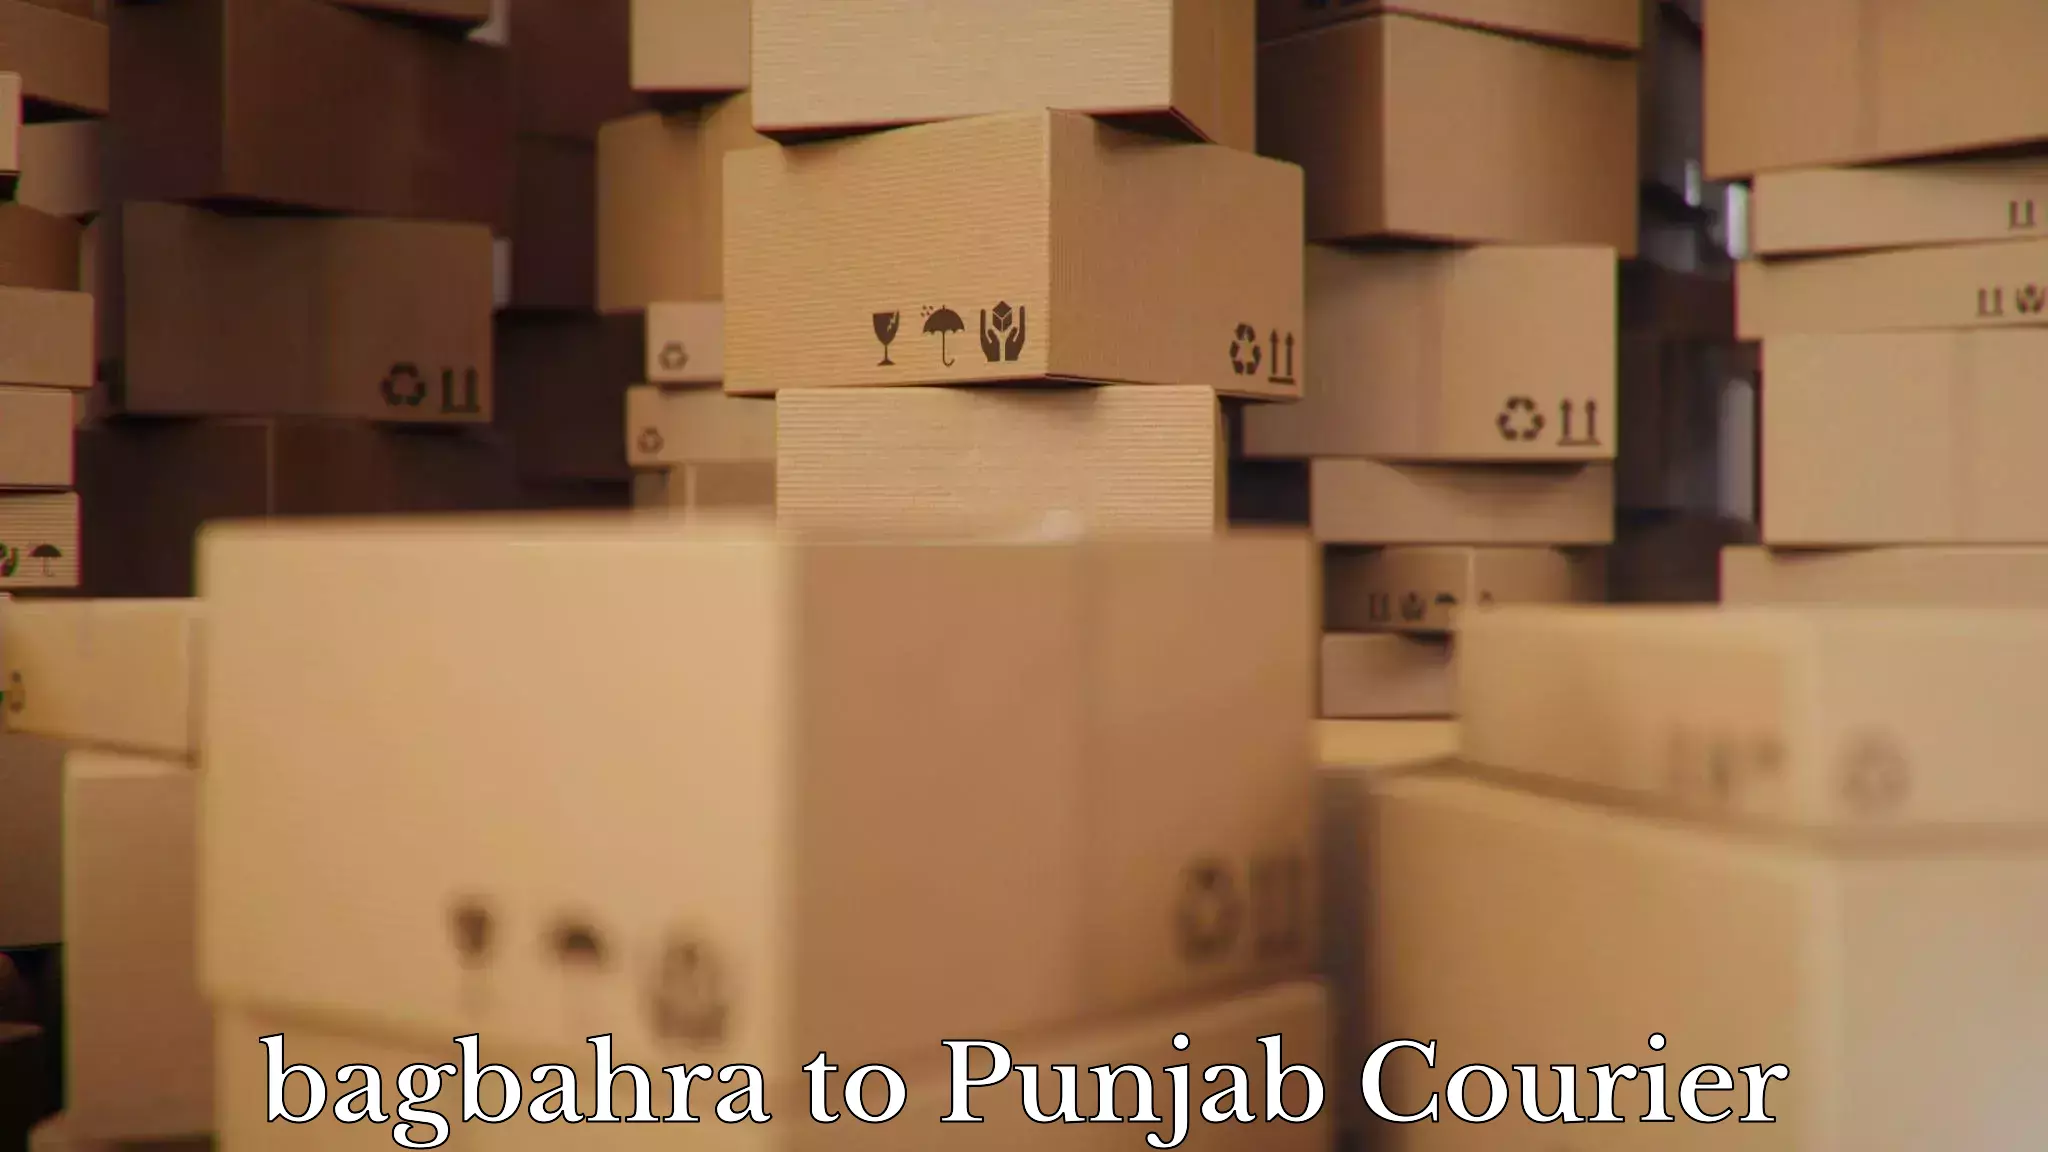 Home furniture moving in bagbahra to Punjab